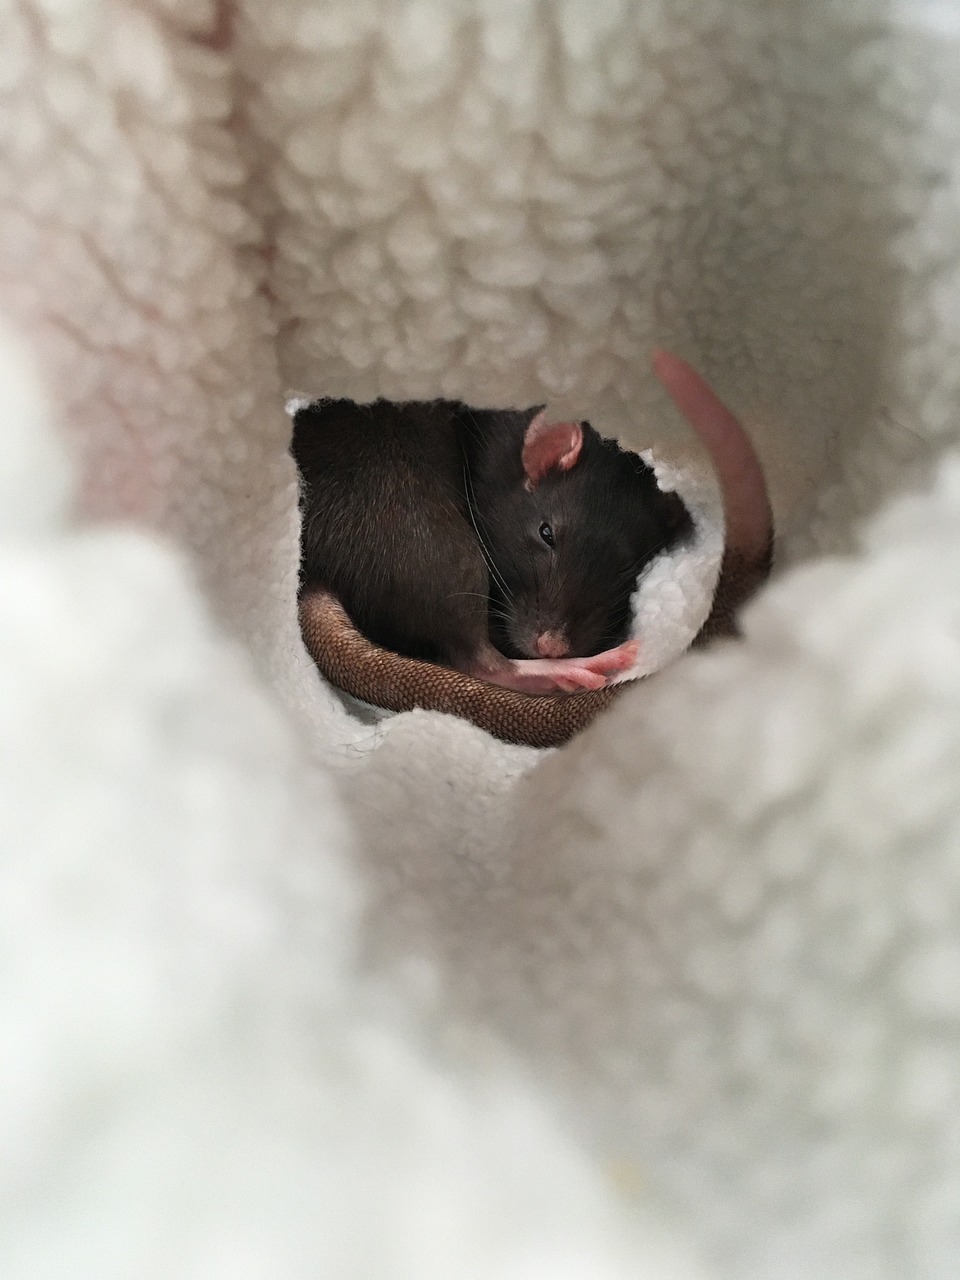 rat's eyes during sleep